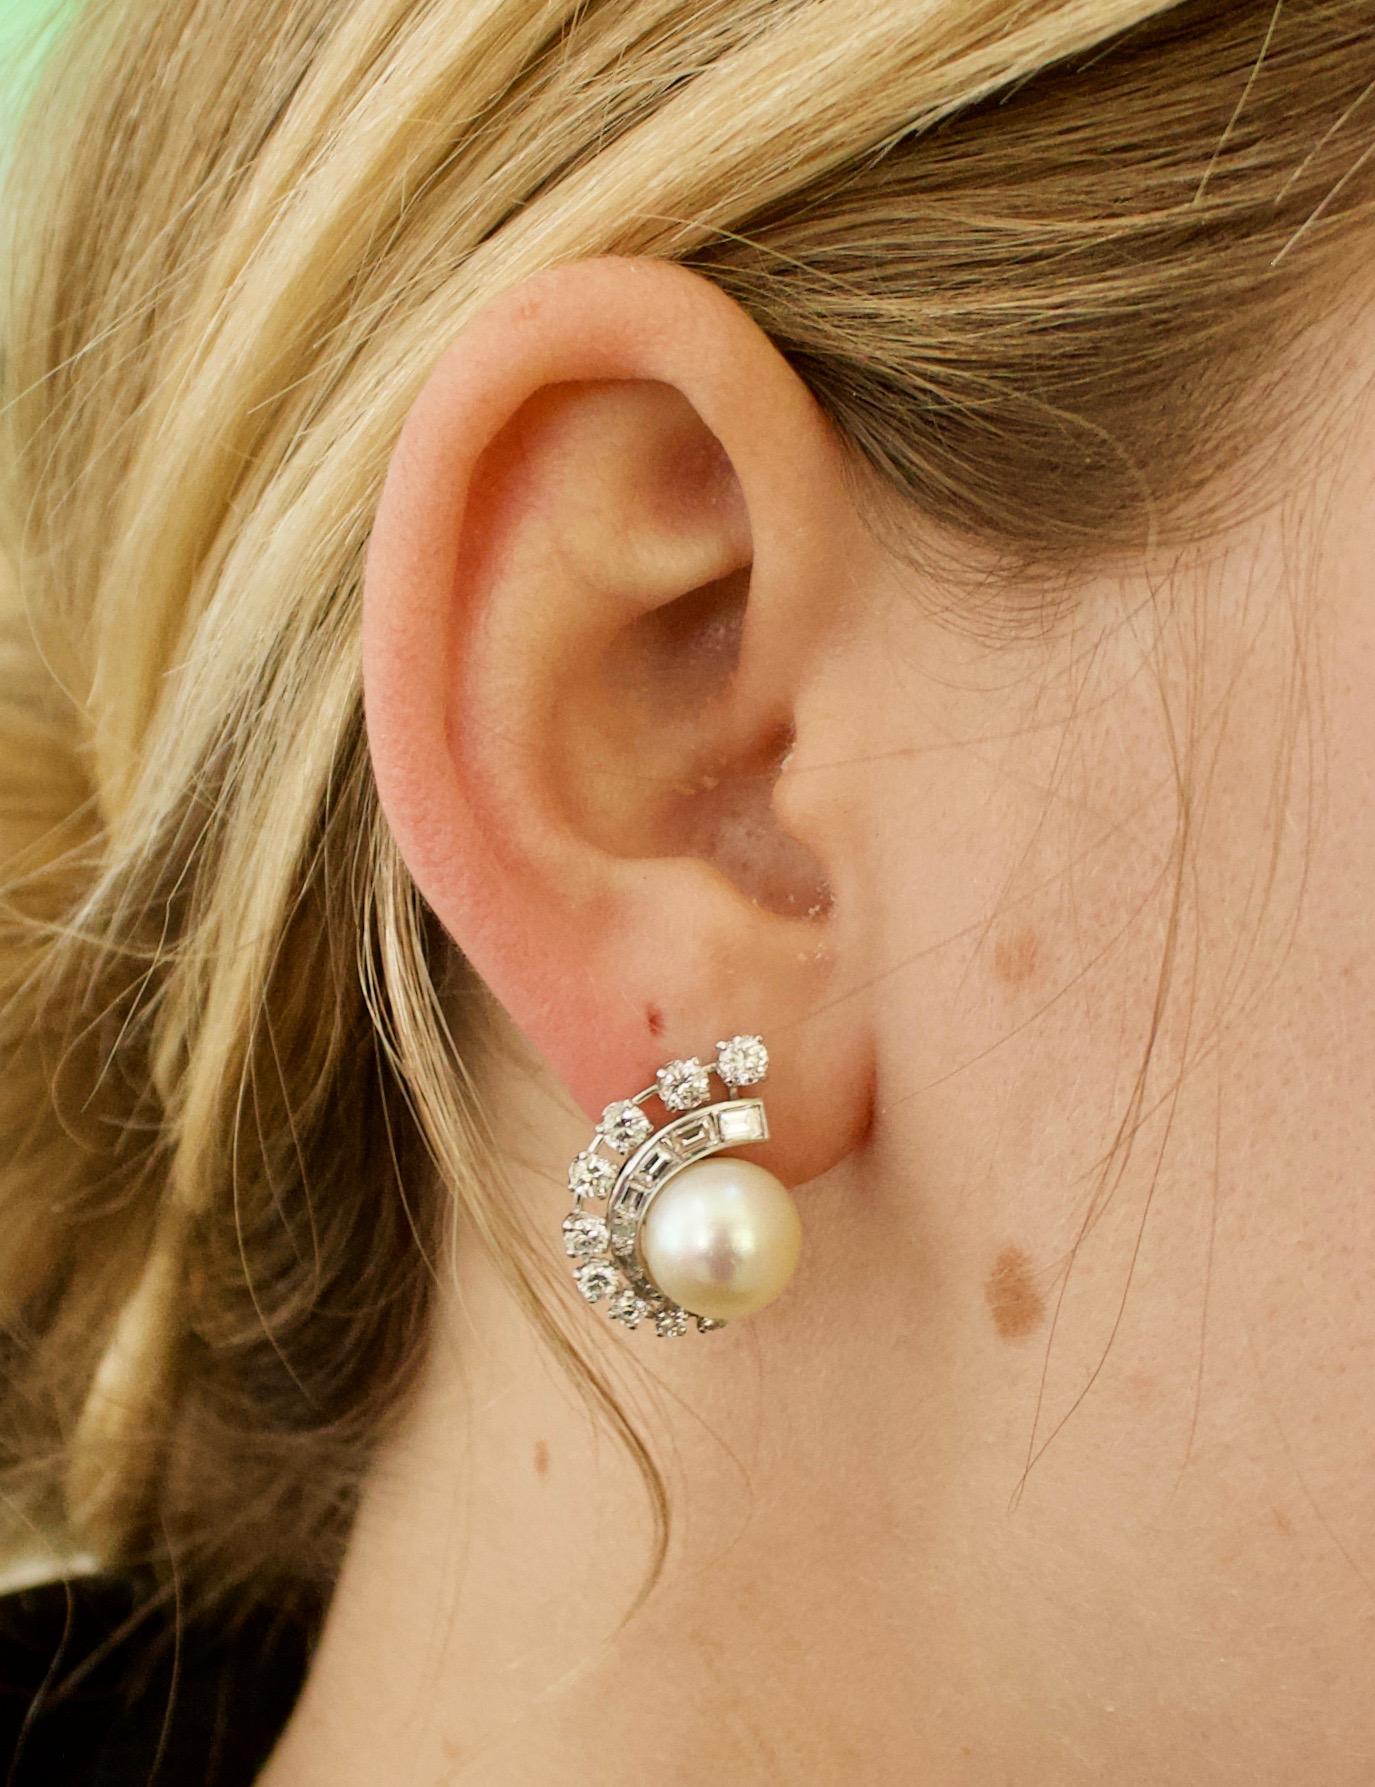 Wir stellen Ihnen diese bezaubernden Perlen- und Diamantohrringe aus Platin vor, ein atemberaubendes Schmuckstück, das garantiert alle Blicke auf sich zieht. Dieser exquisite Ohrring stammt aus den 1950er Jahren und ist eine echte Vintage-Schönheit,